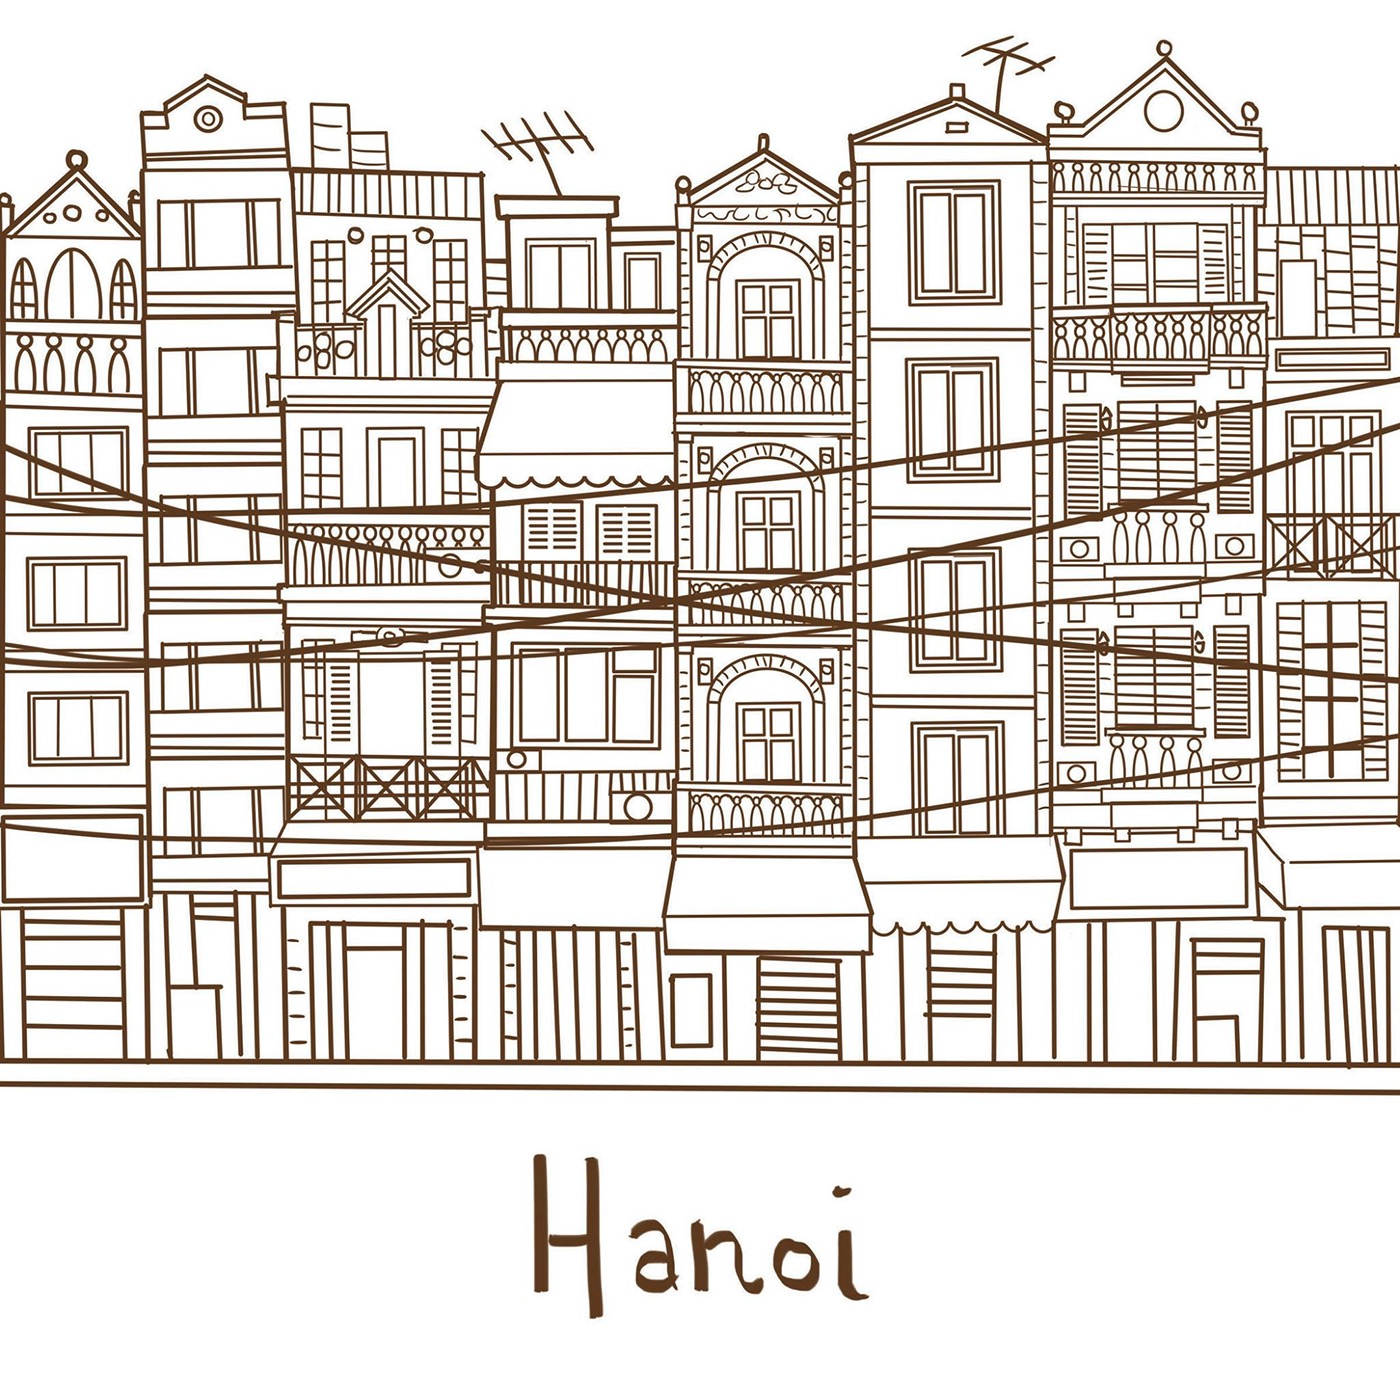 Hanoi Vietnam illustration